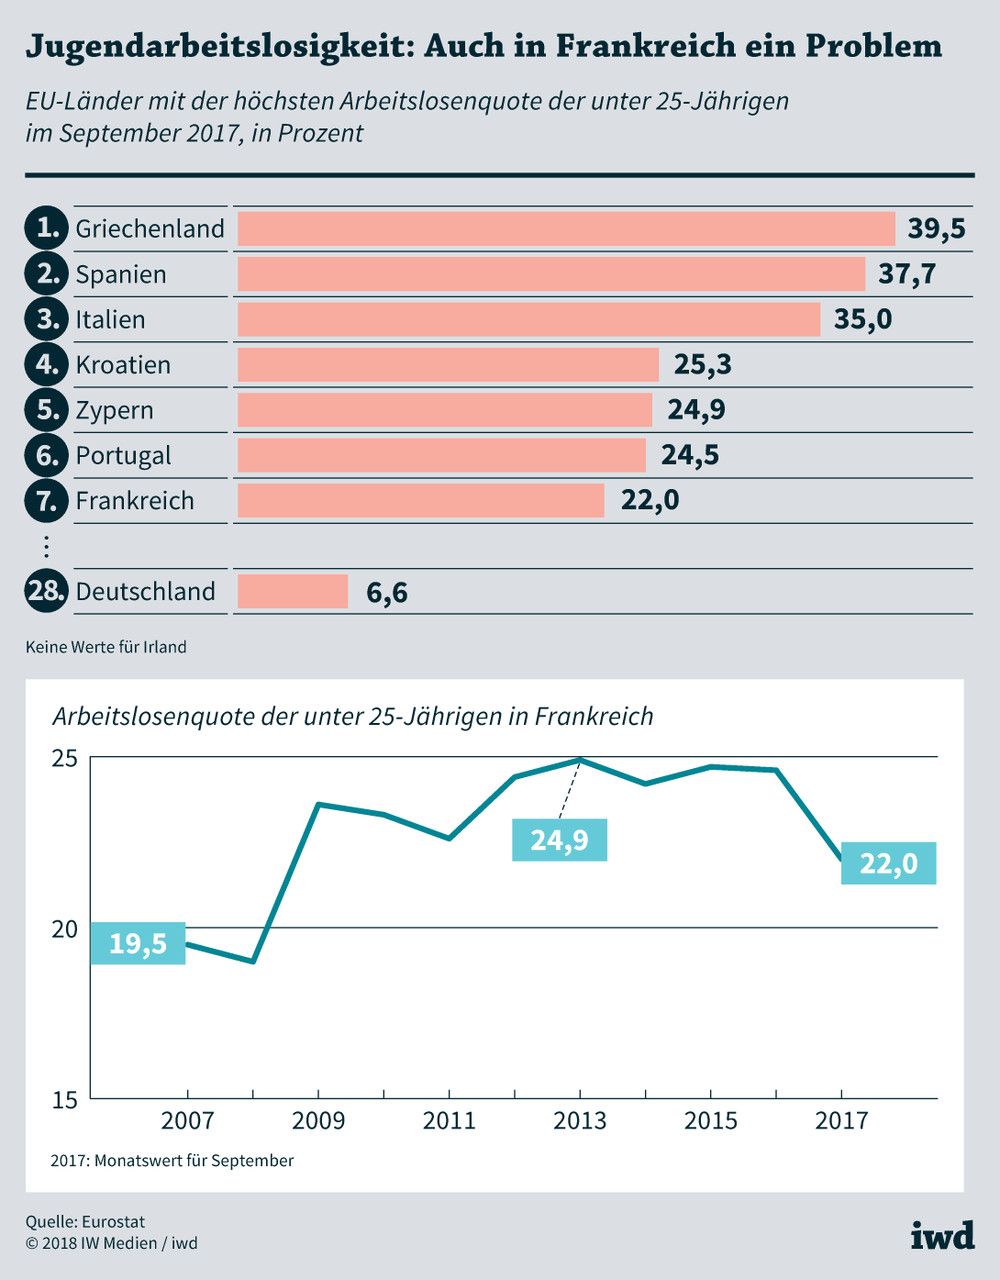 Entwicklung der Jugendarbeitslosigkeit in Frankreich von 2007 bis 2017 und Vergleich mit anderen europäischen Ländern